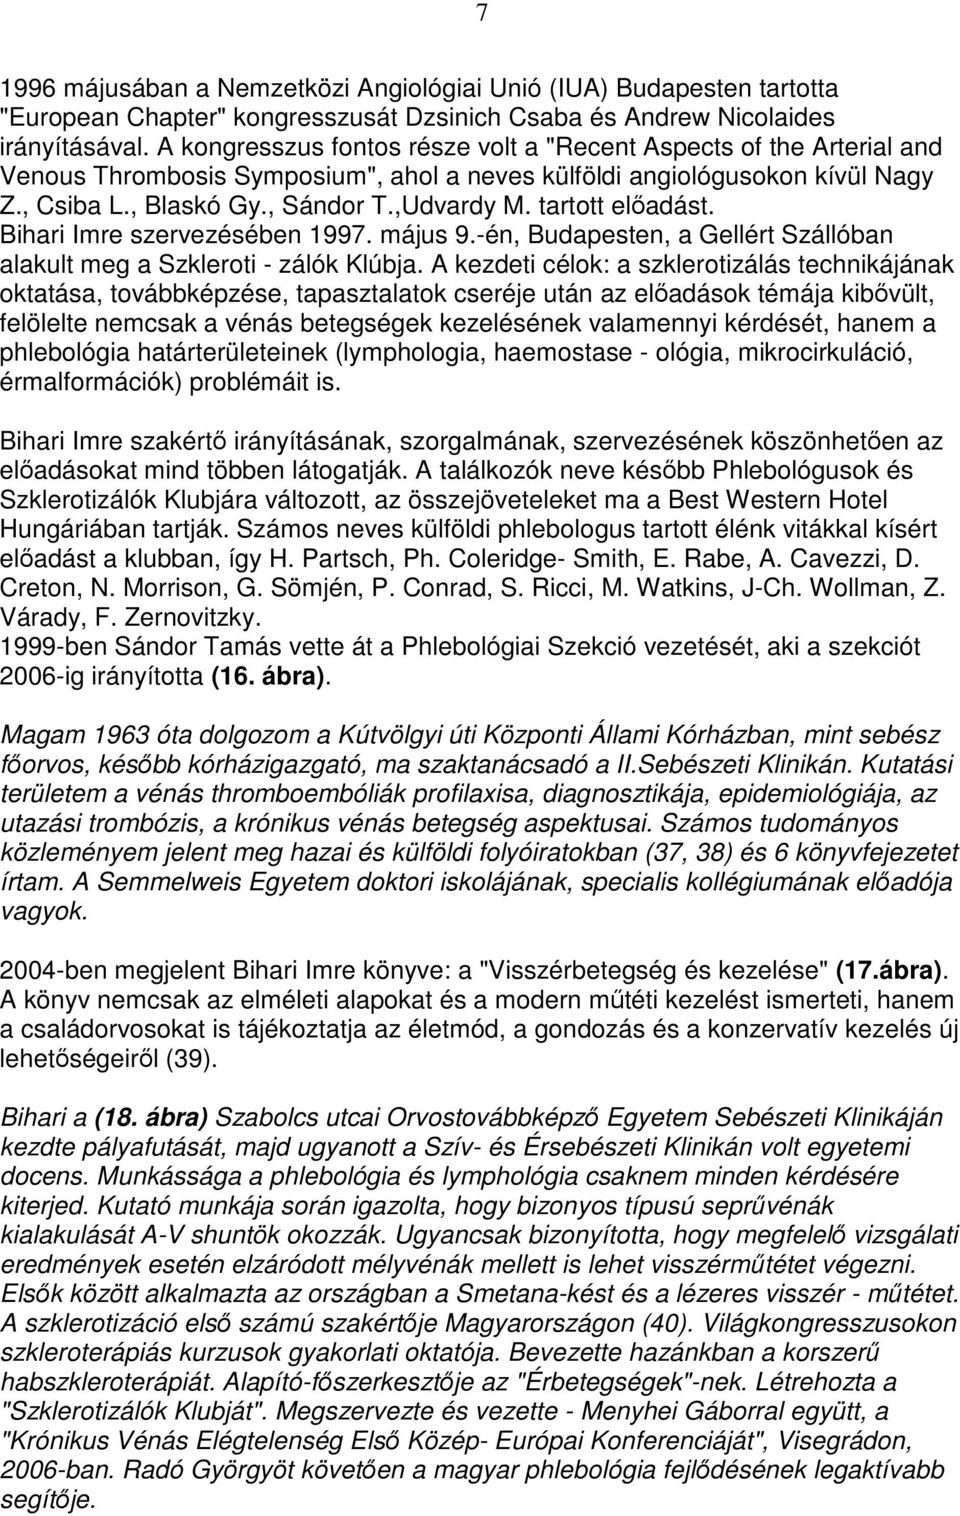 tartott elıadást. Bihari Imre szervezésében 1997. május 9.-én, Budapesten, a Gellért Szállóban alakult meg a Szkleroti - zálók Klúbja.